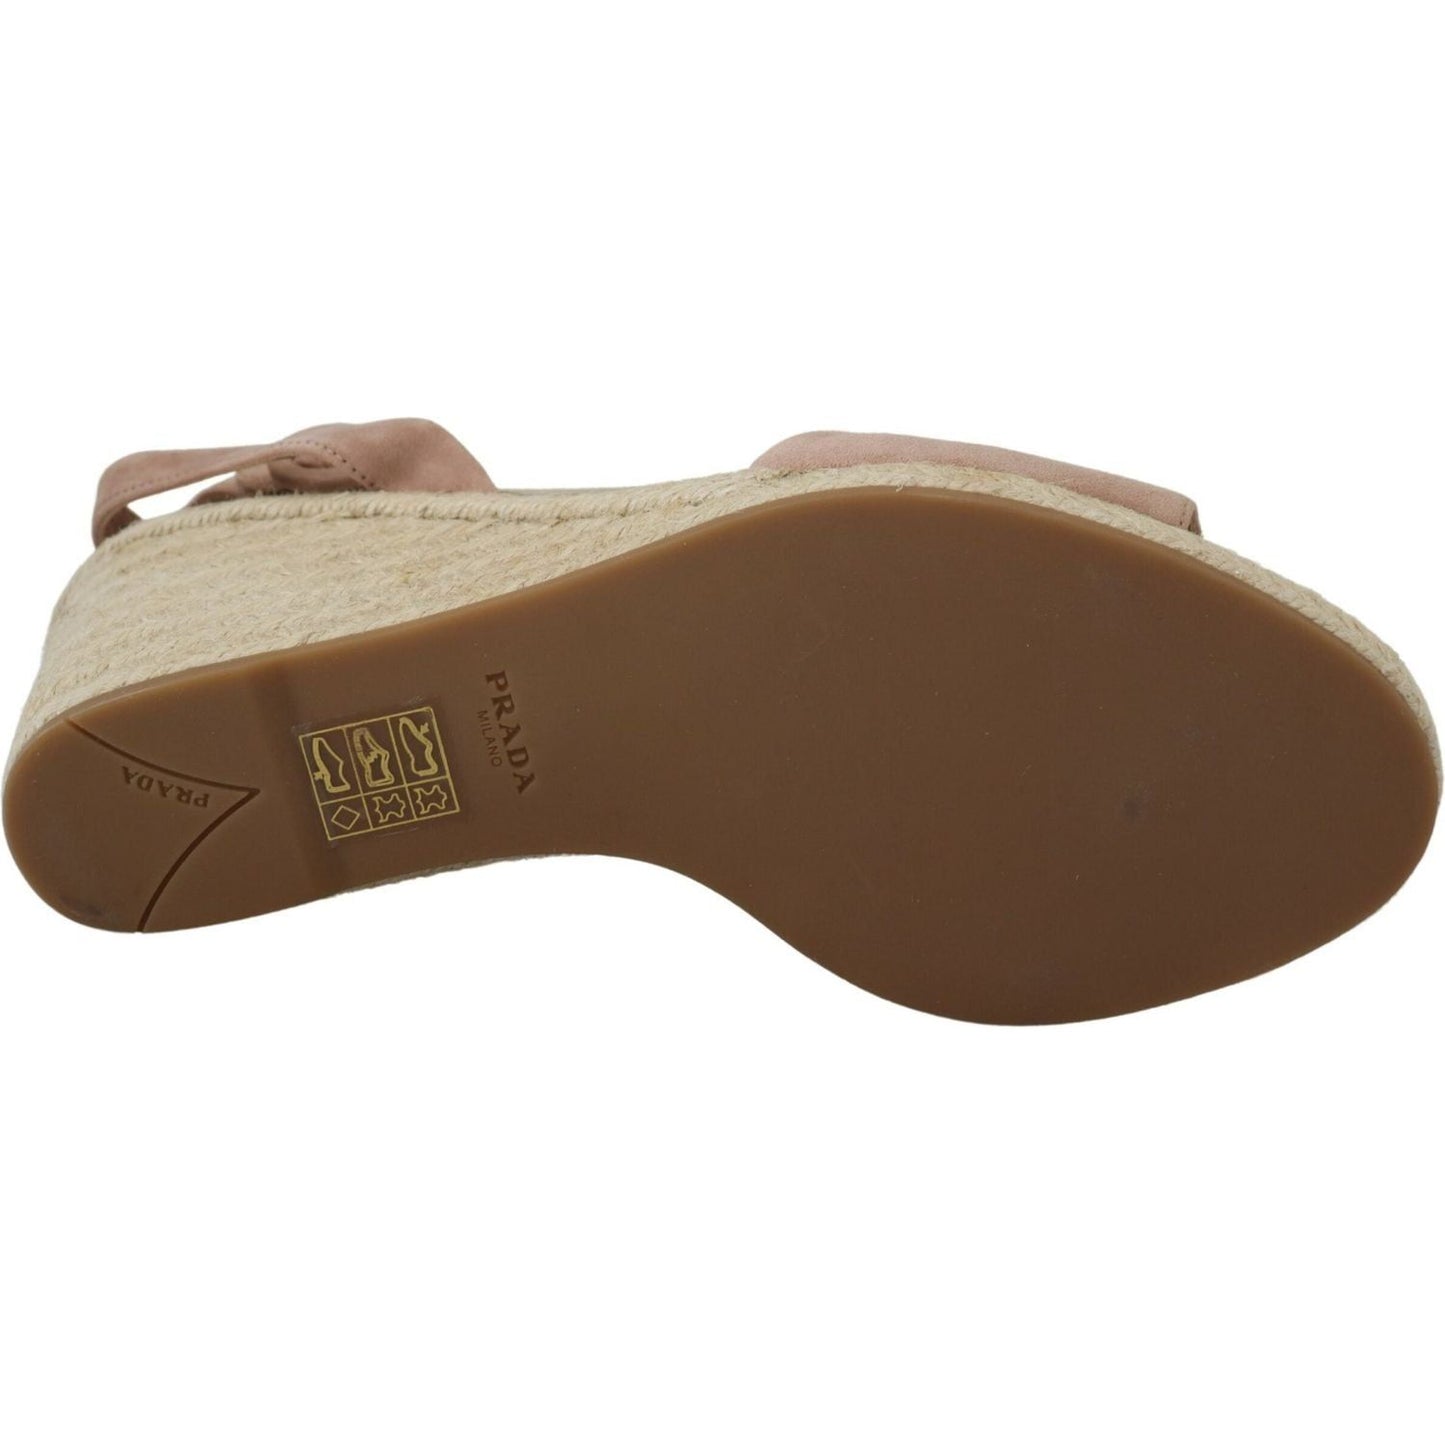 Prada Elegant Suede Ankle Strap Wedge Sandals pink-suede-leather-ankle-strap-sandals IMG_8321-scaled-9abbd8cc-7a4.jpg